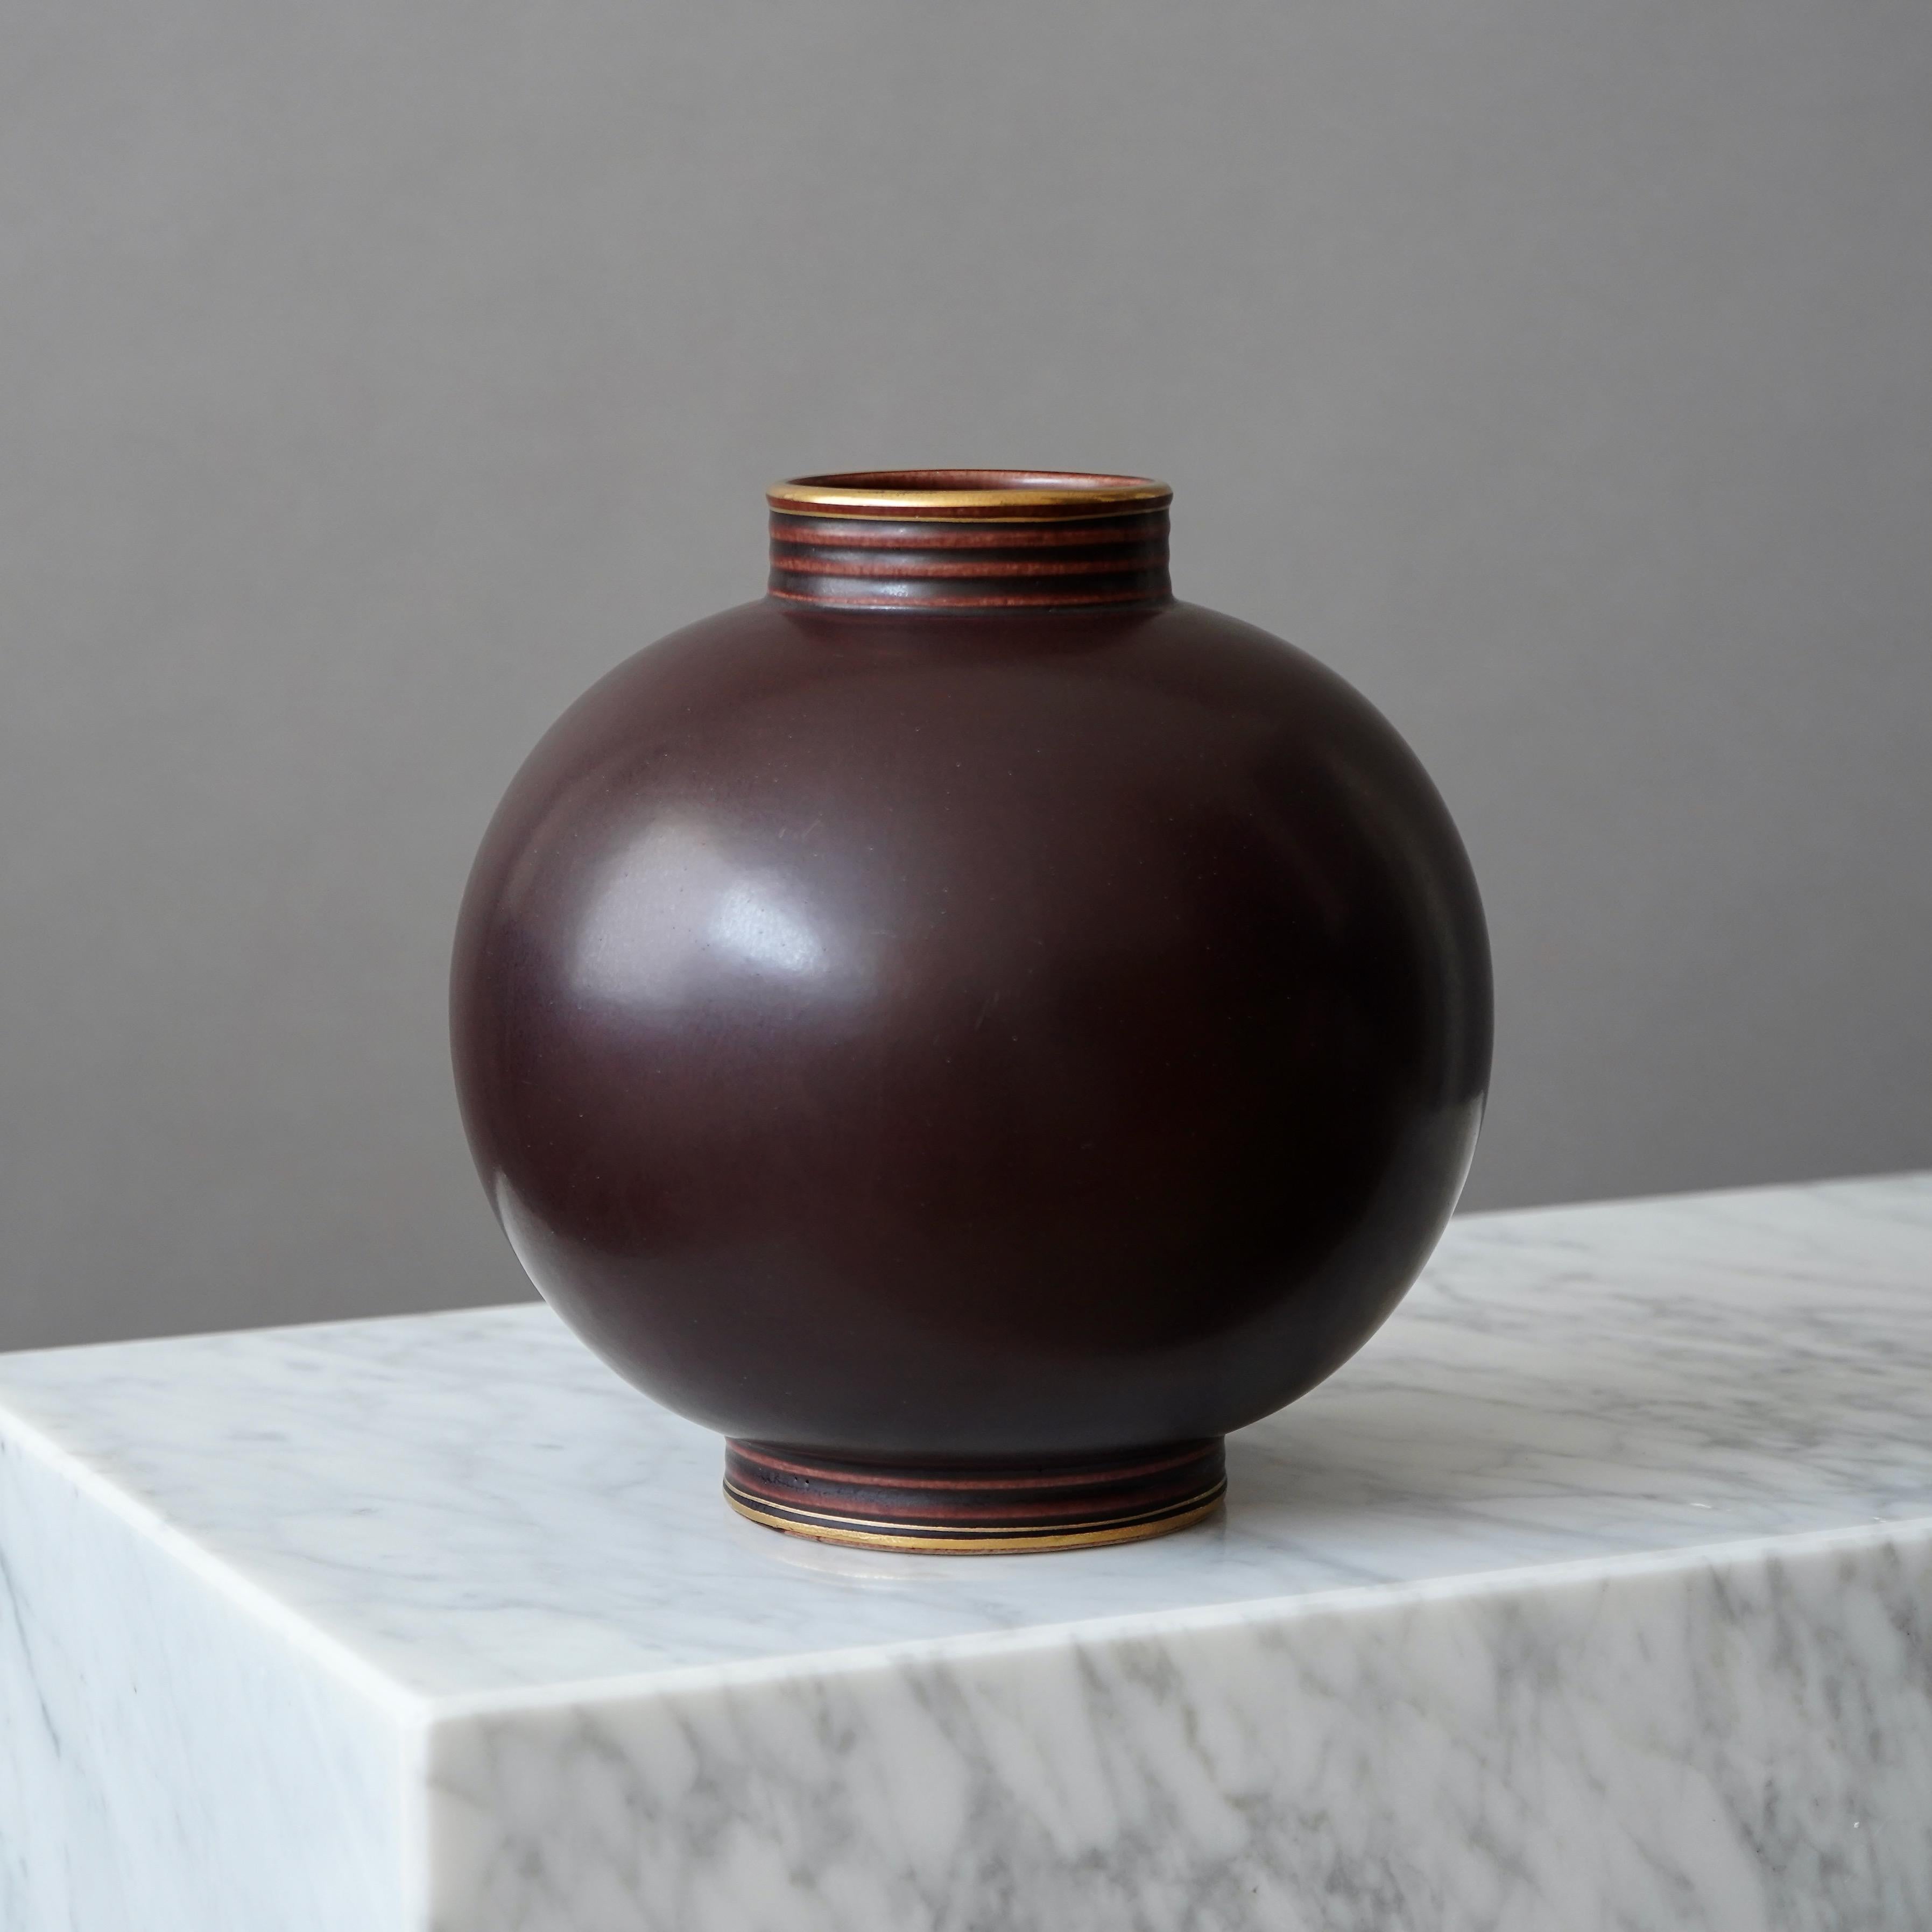 Un magnifique vase en grès avec une glaçure étonnante. 
Conçu par Gunnar Nylund pour Rorstrand, Suède, années 1930.  

Excellent état. Estampillé 